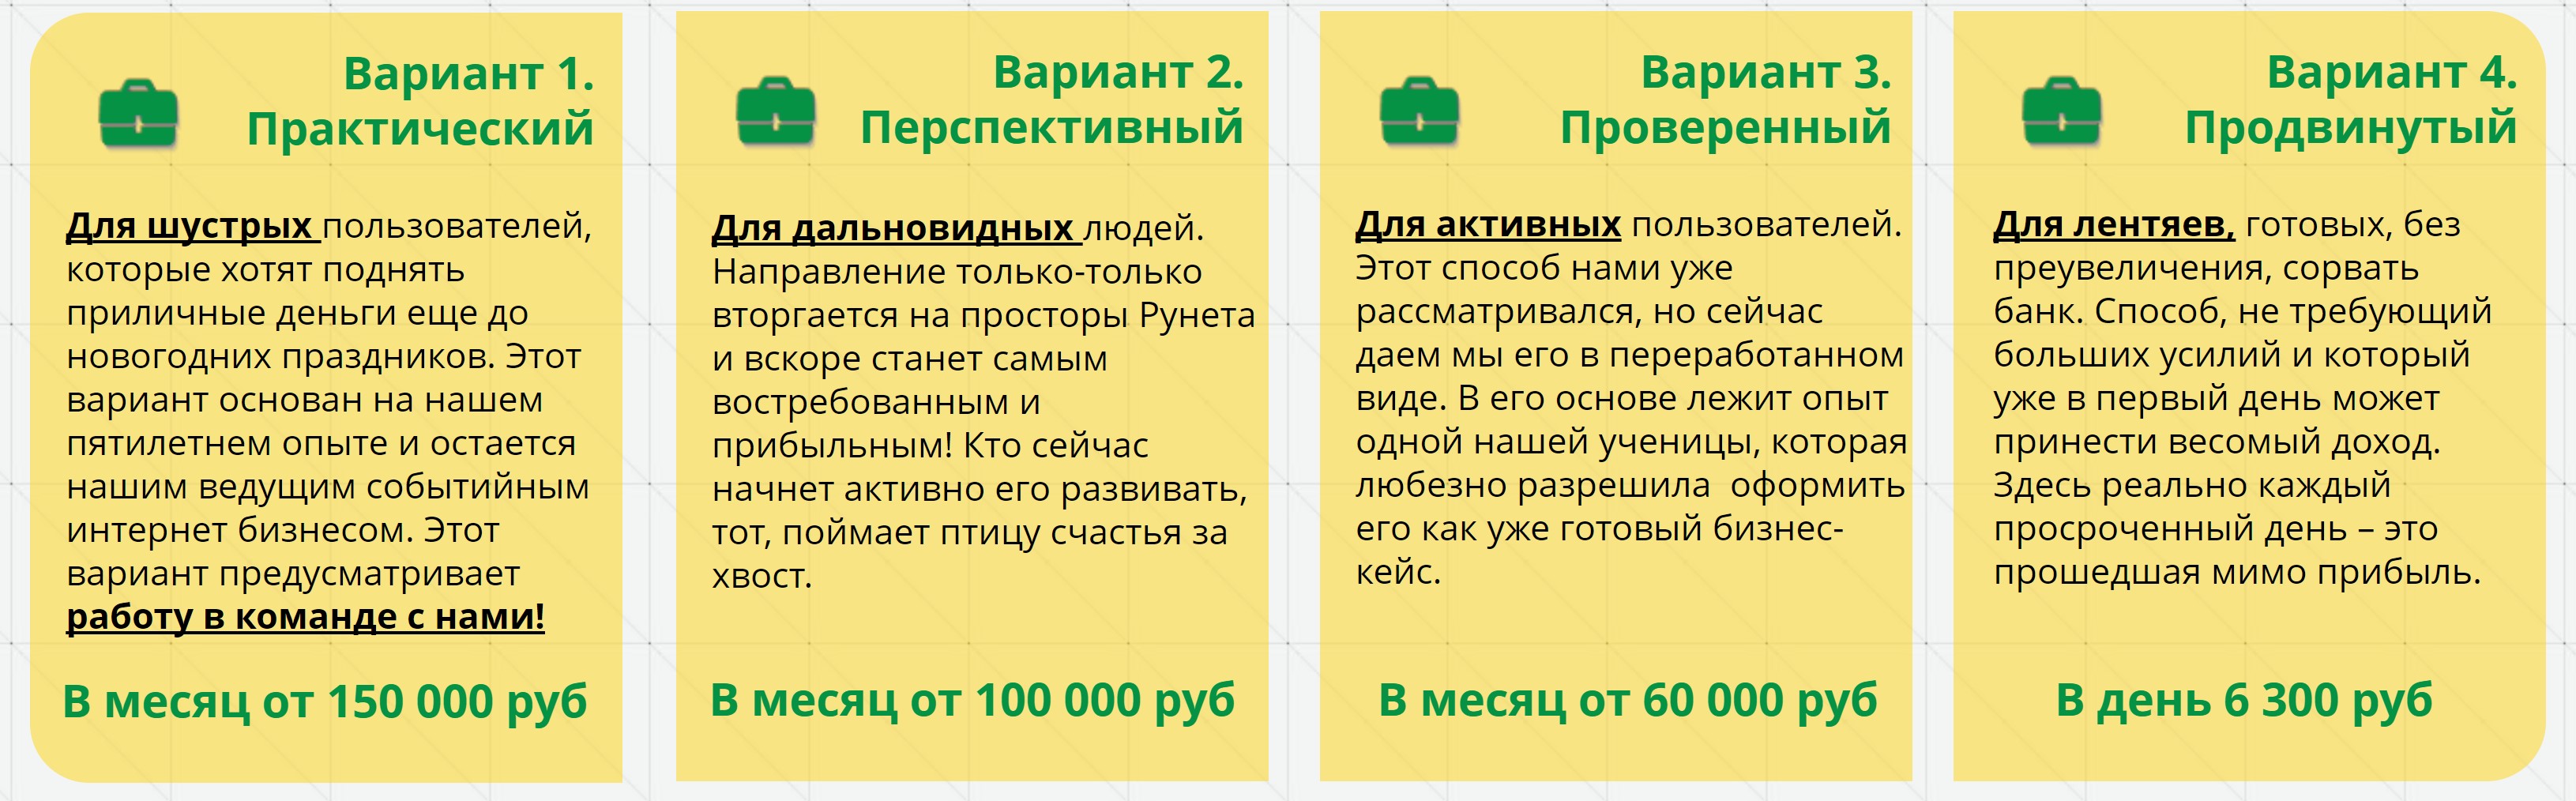 Курс «4П-Время делать деньги» от Ленара Янгирова и Юлии Максимовой. Отзывы о http://vremjadelatdengi.ru - можно доверять?